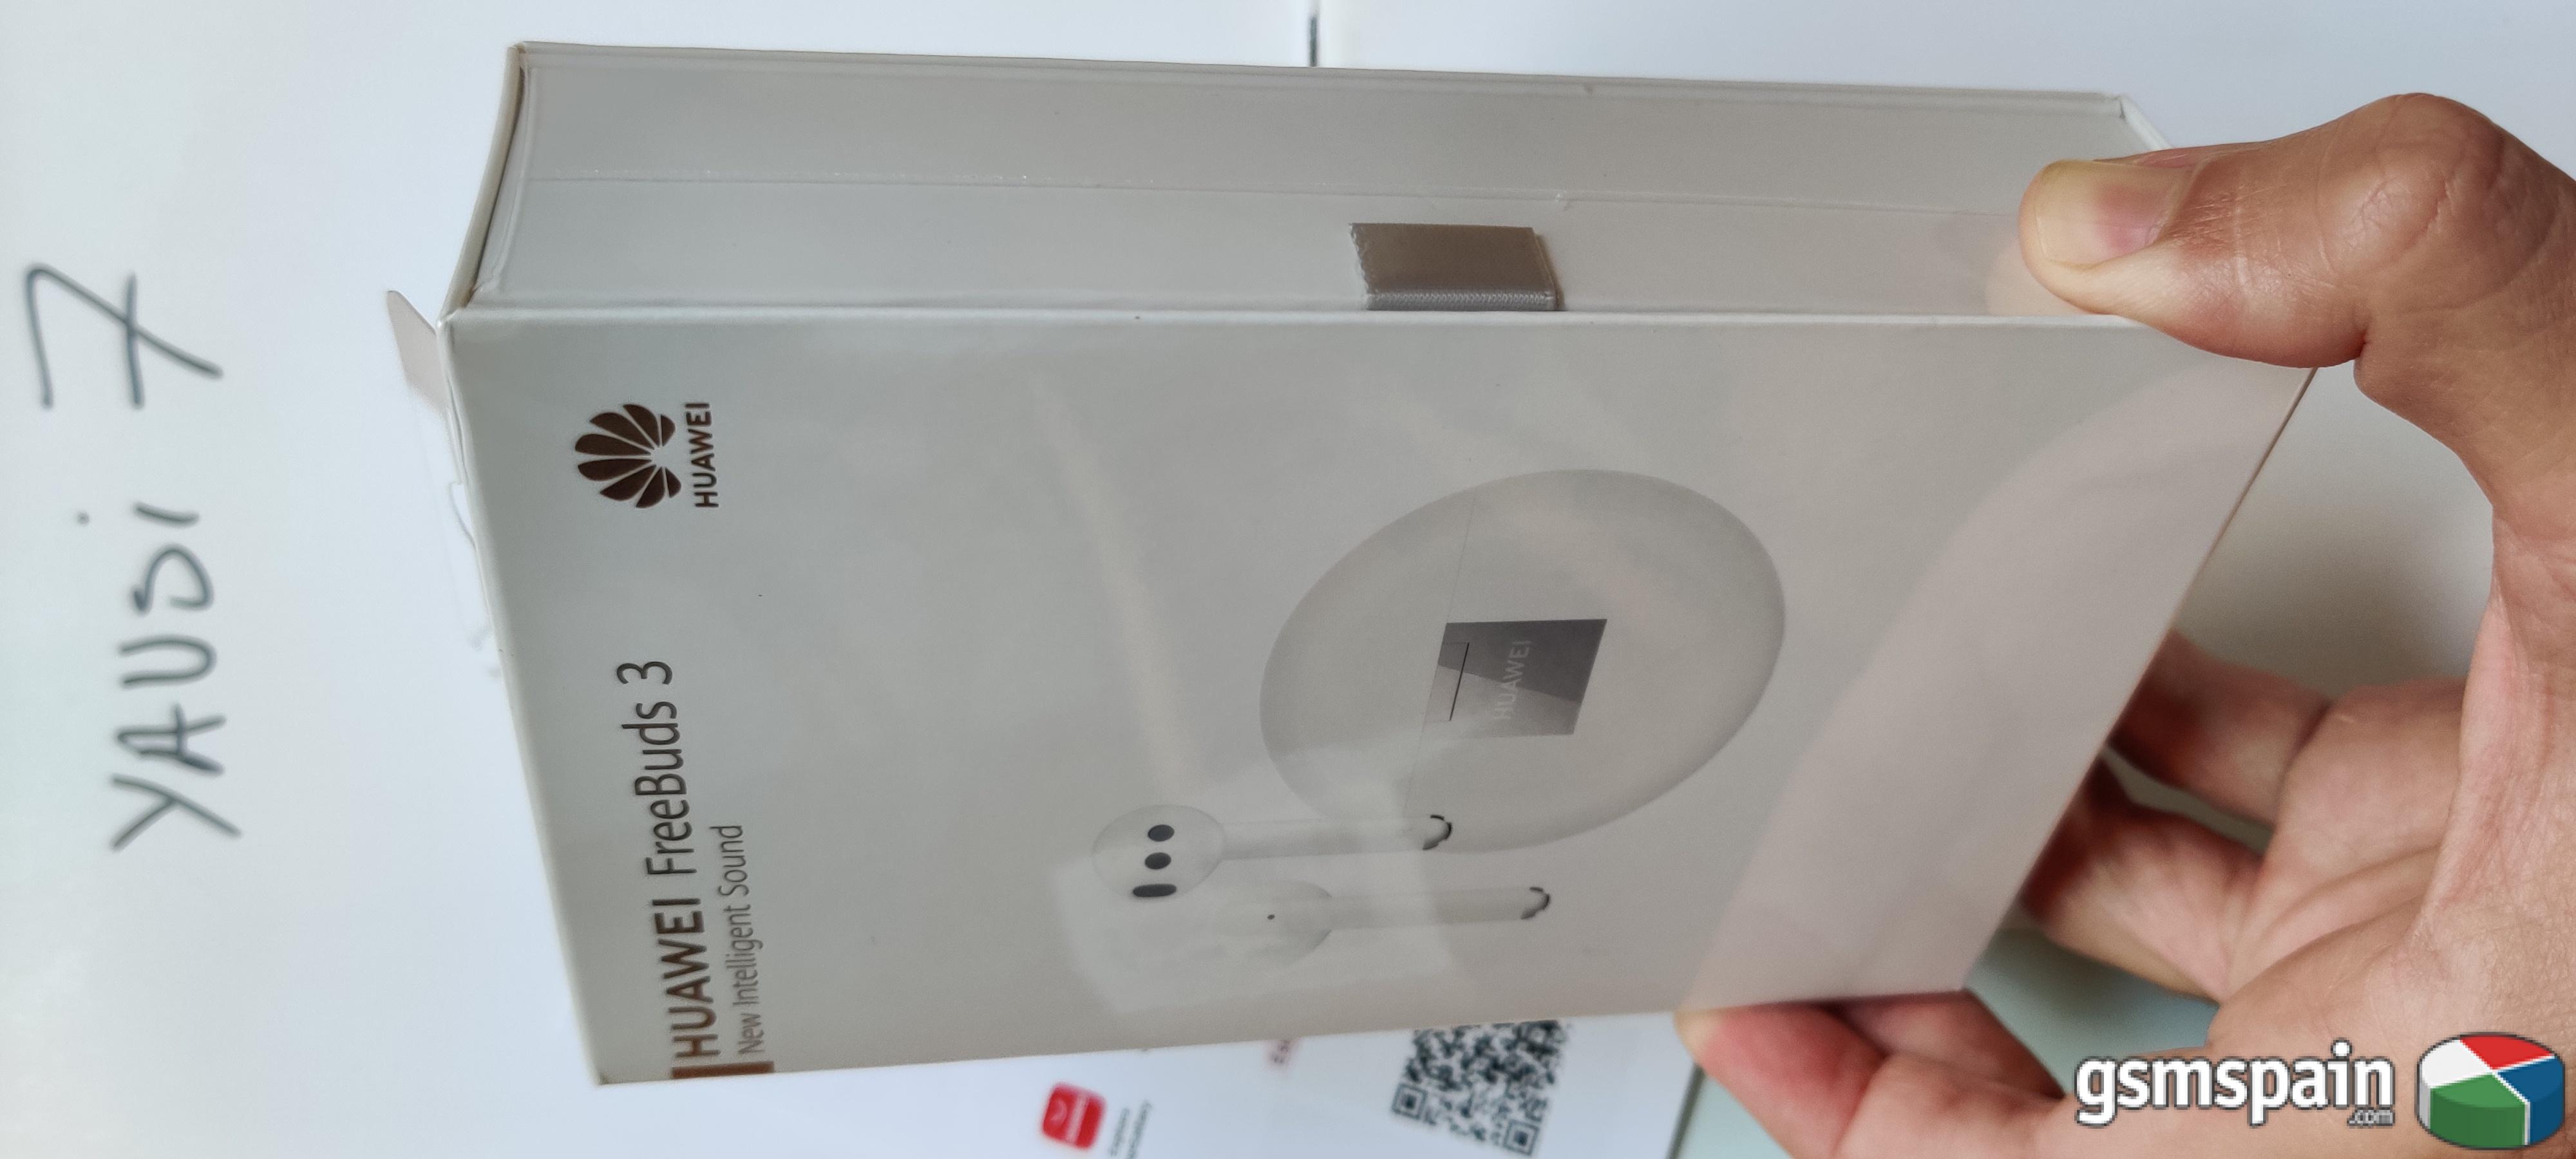 [VENDO] Huawei Freebuds 3 precintados